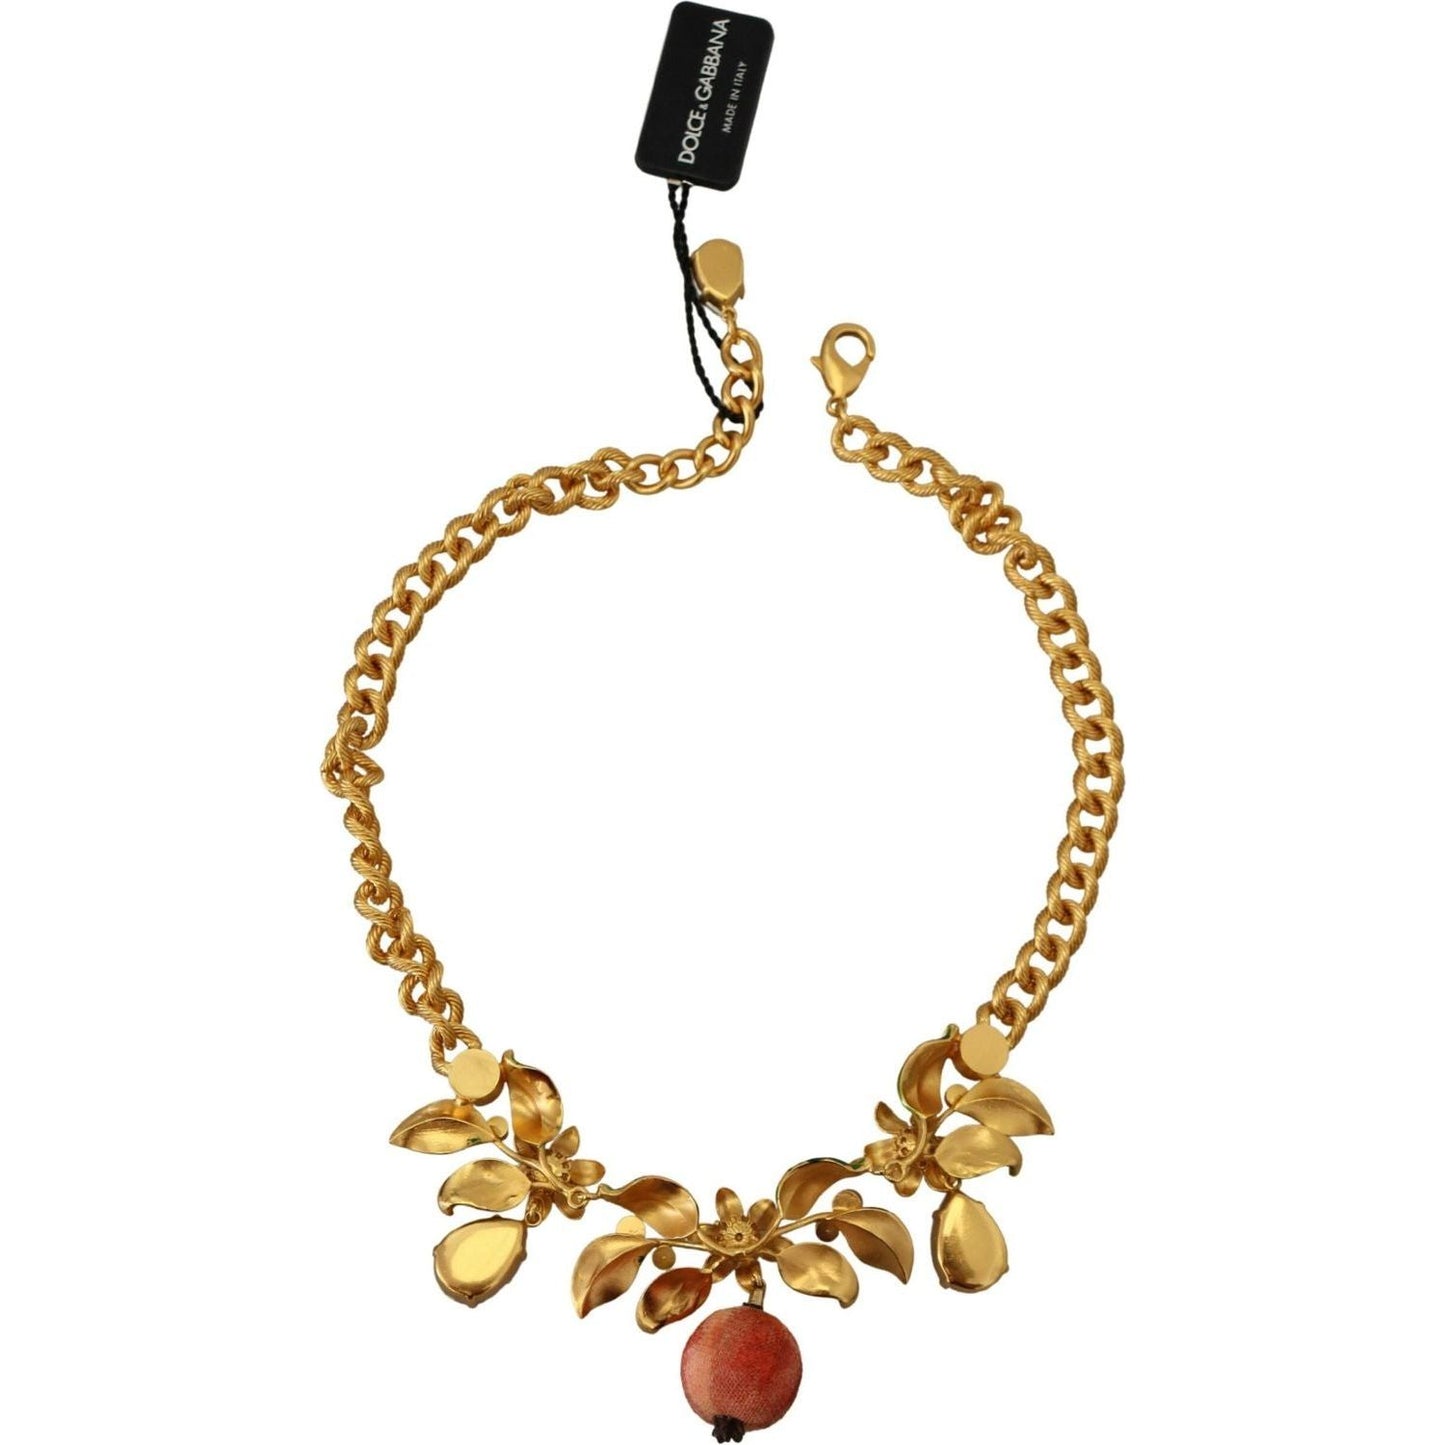 Dolce & Gabbana Elegant Floral Fruit Motif Gold Necklace gold-brass-crystal-logo-fruit-floral-statement-necklace IMG_7479-1-scaled-3052f90e-f56.jpg